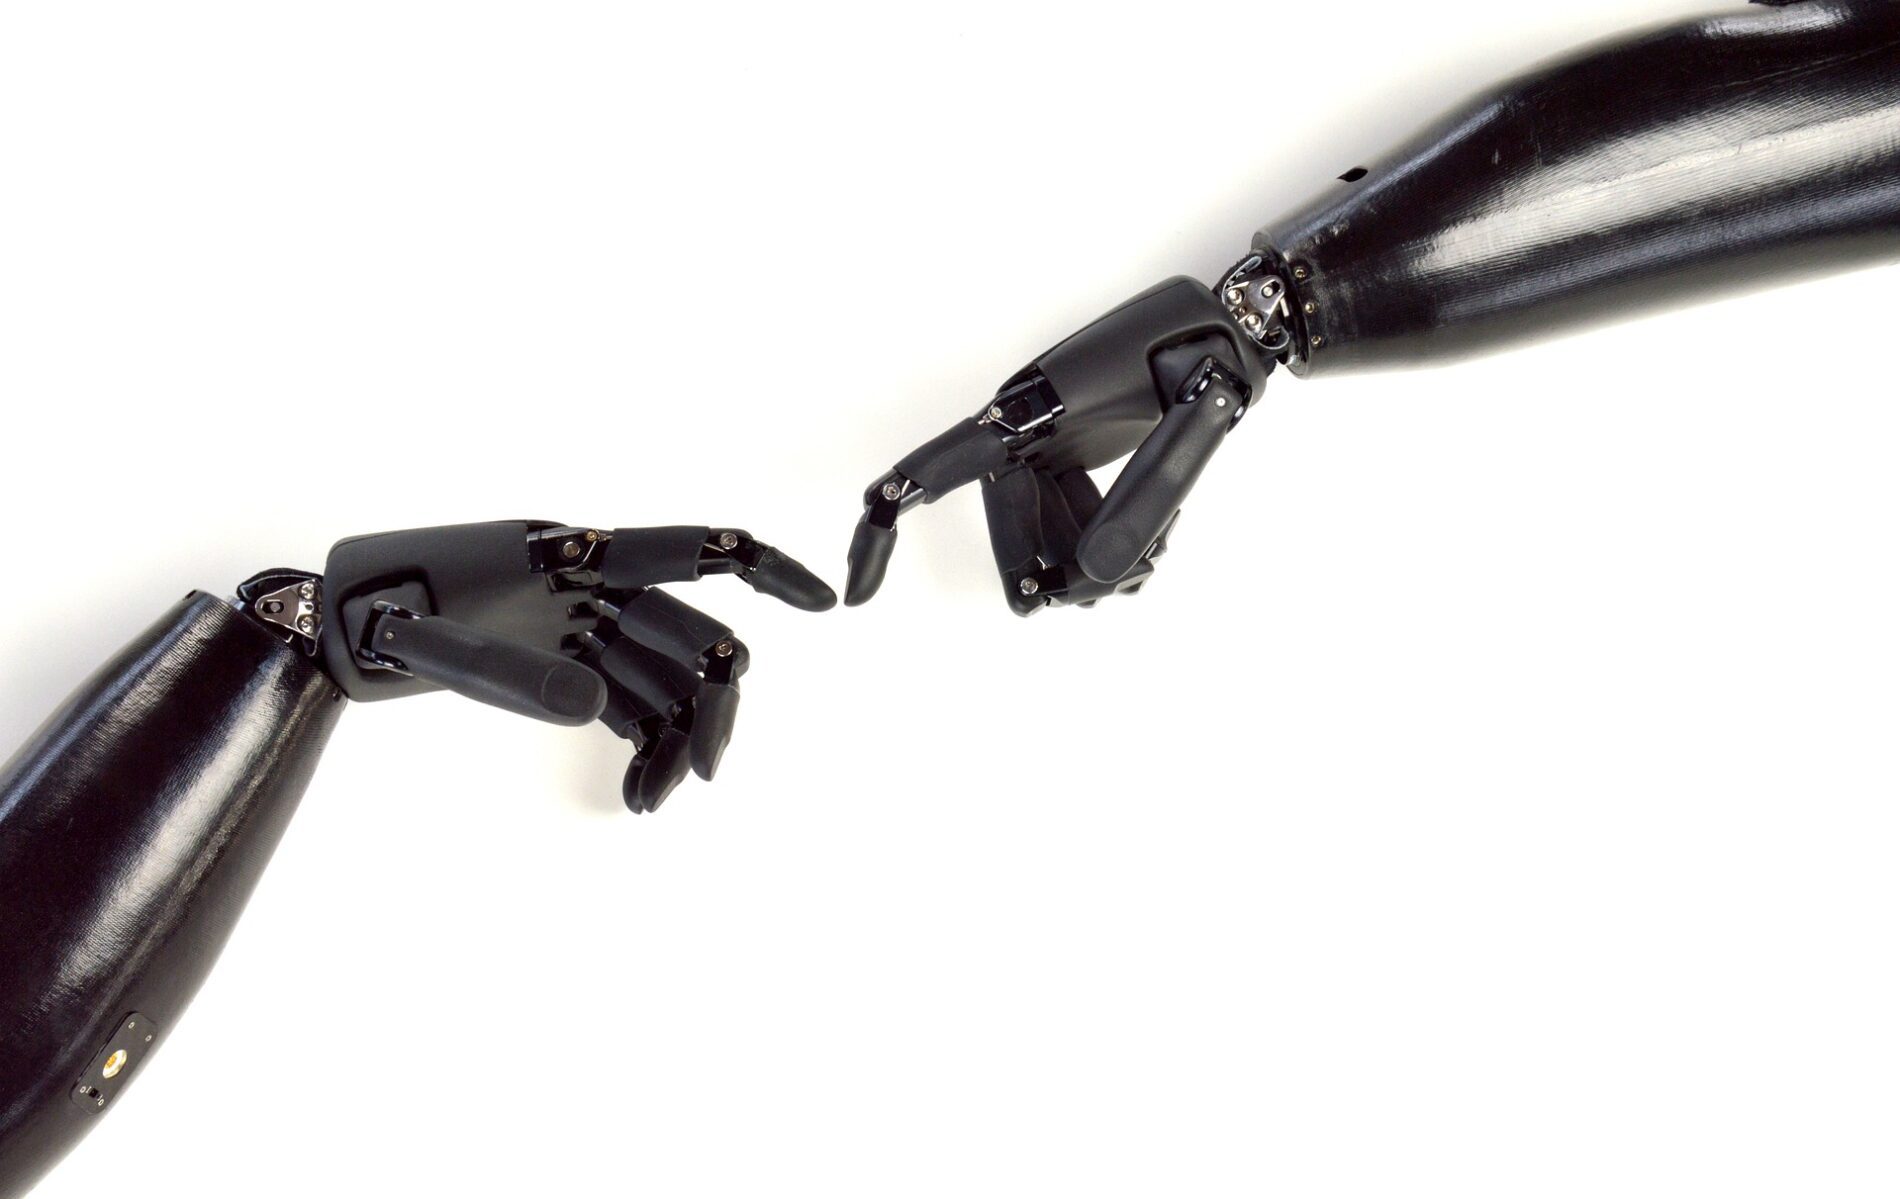 Eternity Life Clinics - Парализованный человек теперь может сам себя покормить с помощью роботизированных рук